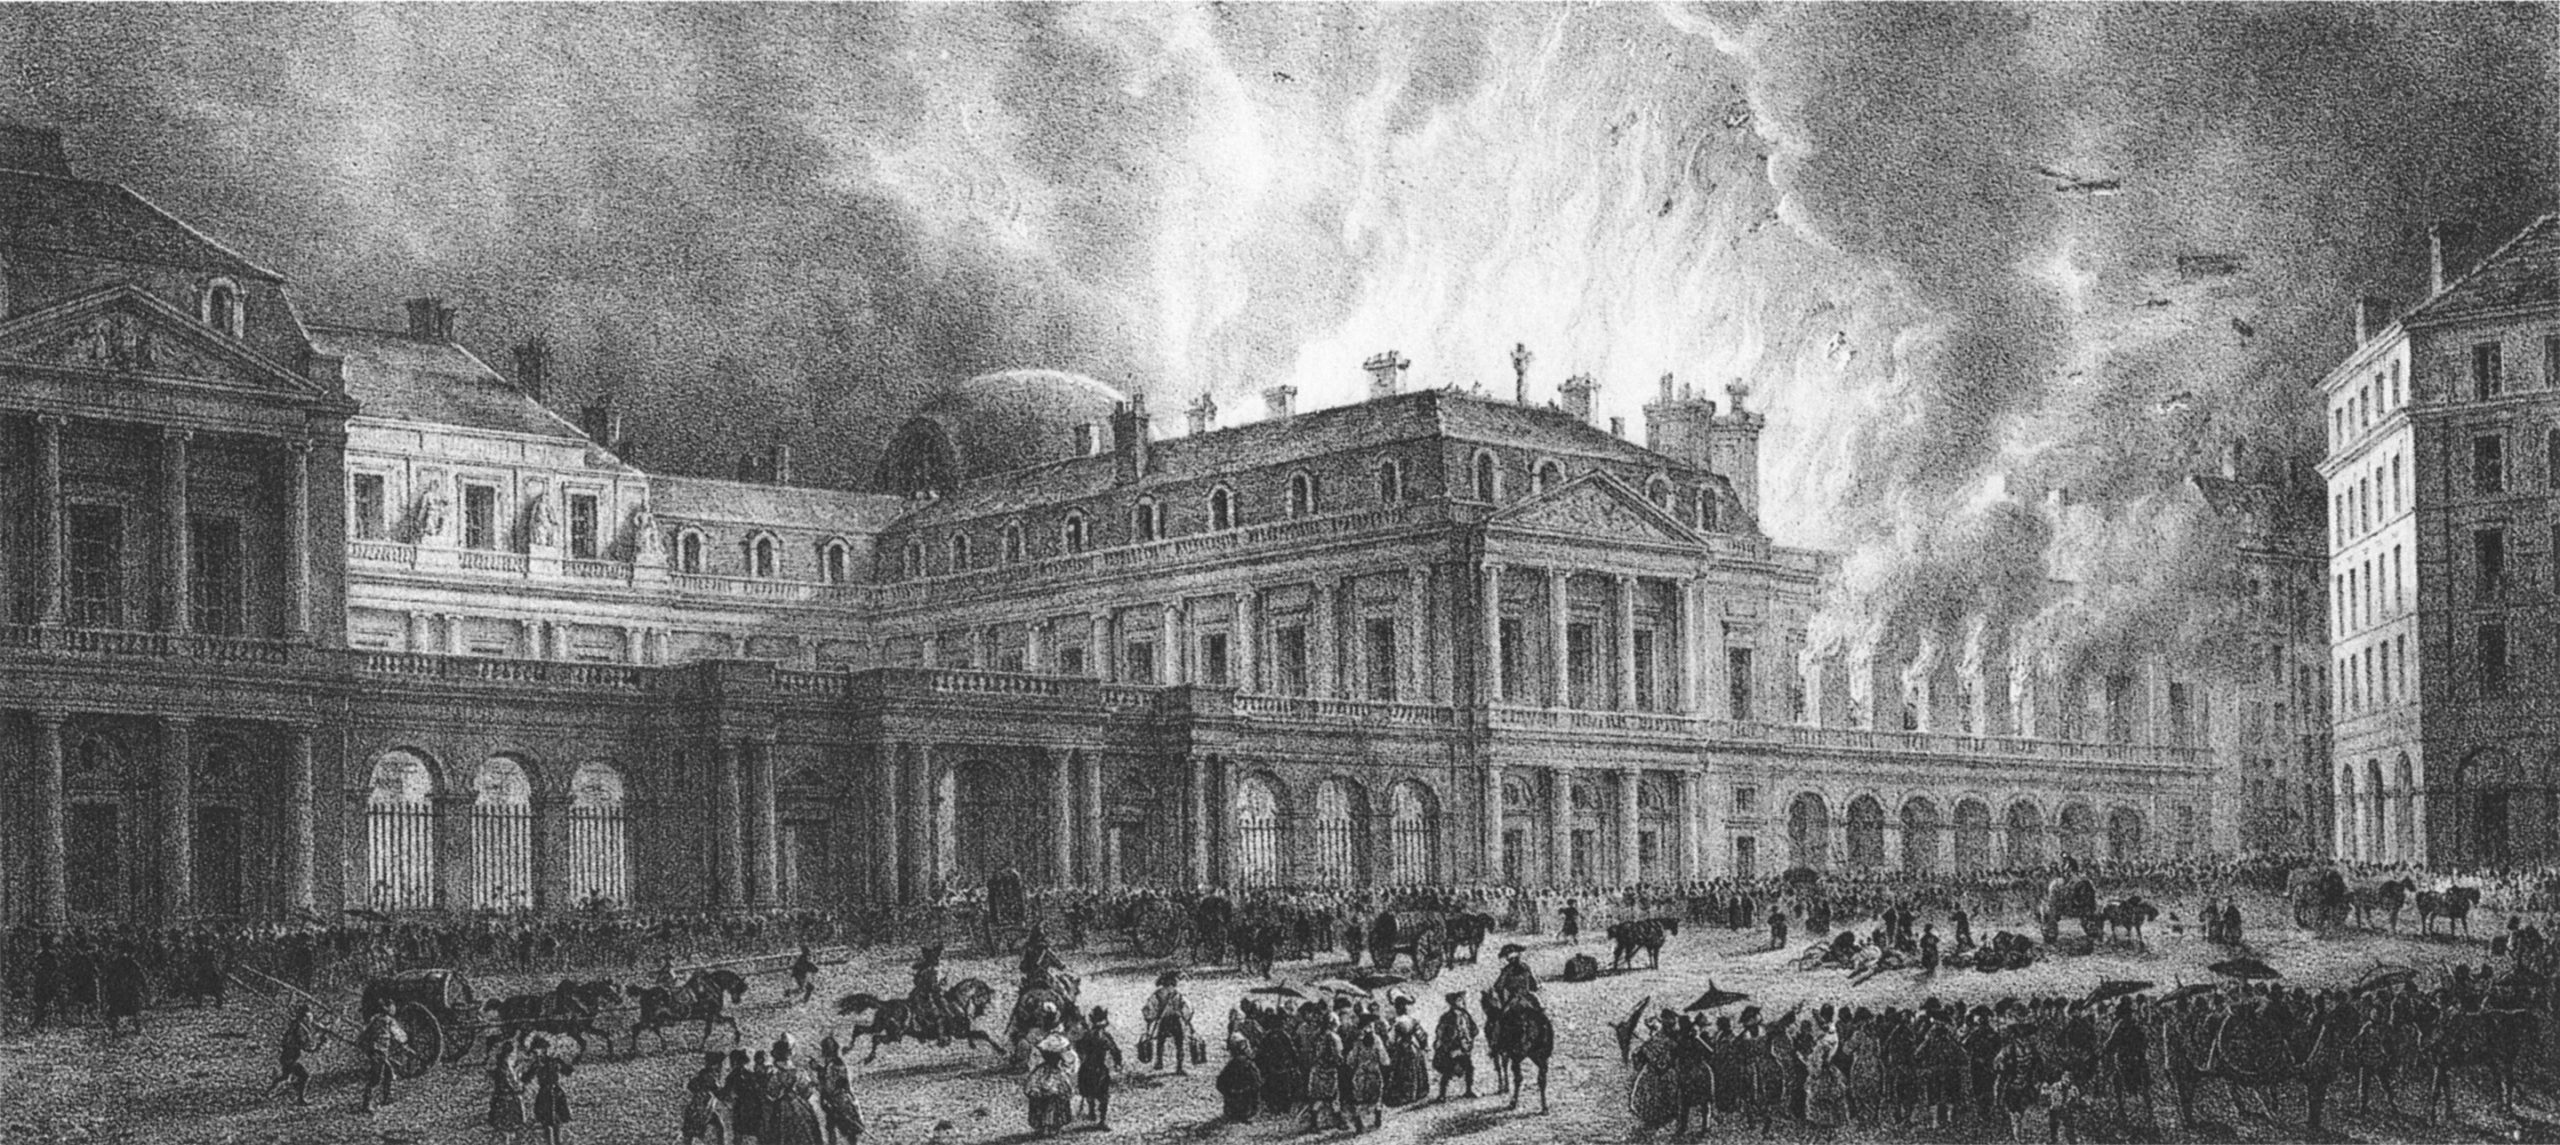 Salle-du-Palais-Royal-Fire-1781